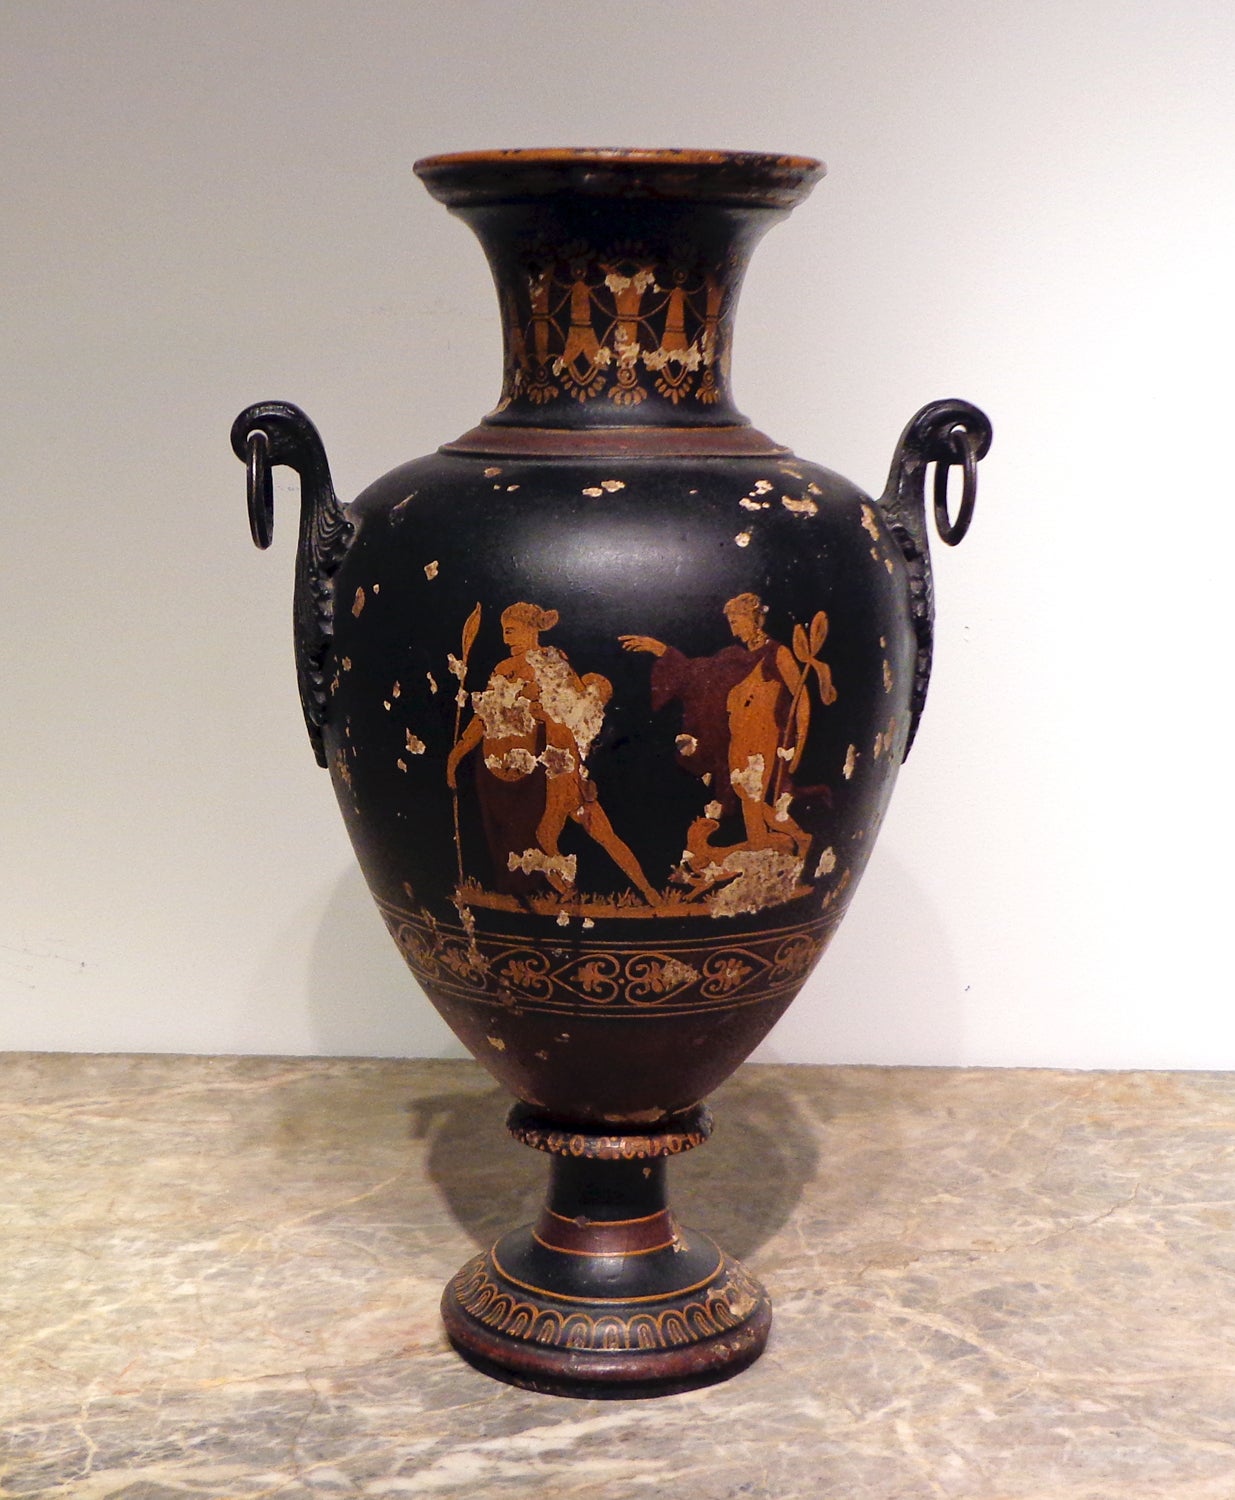 Grand Tour" Etruskische Vase/Urne aus Gusseisen